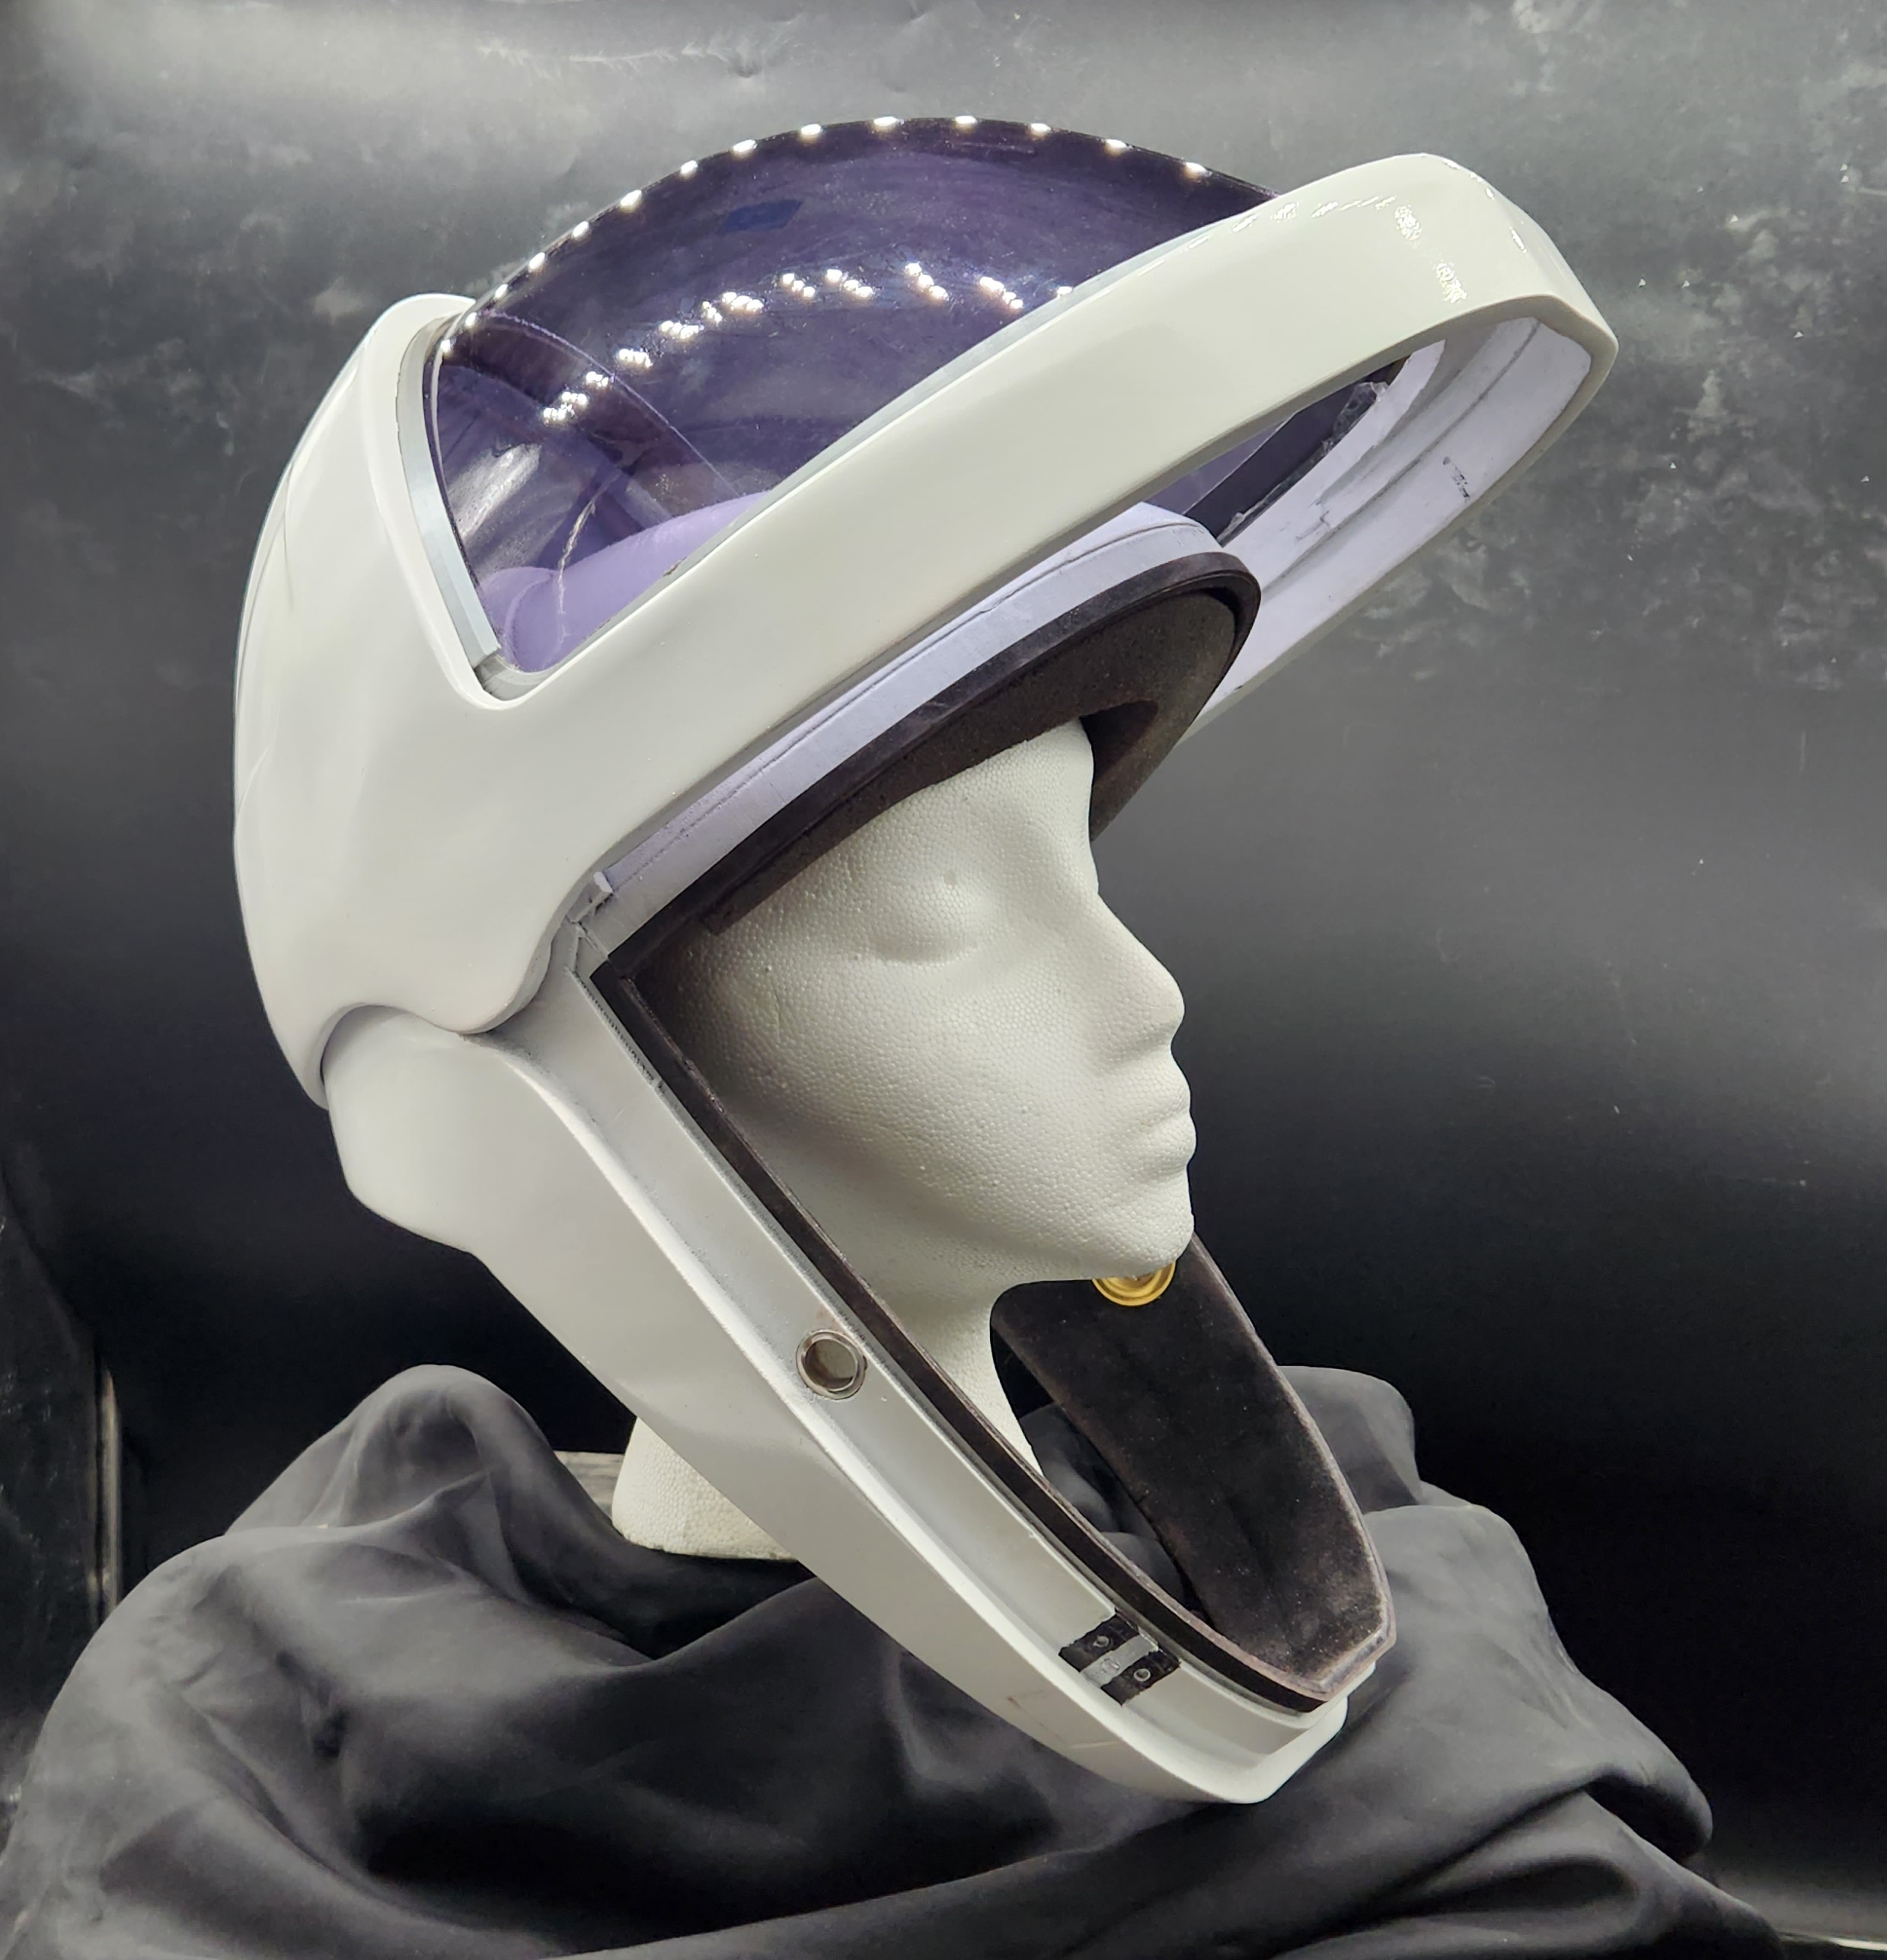 SpaceX Inspired Starman Helmet